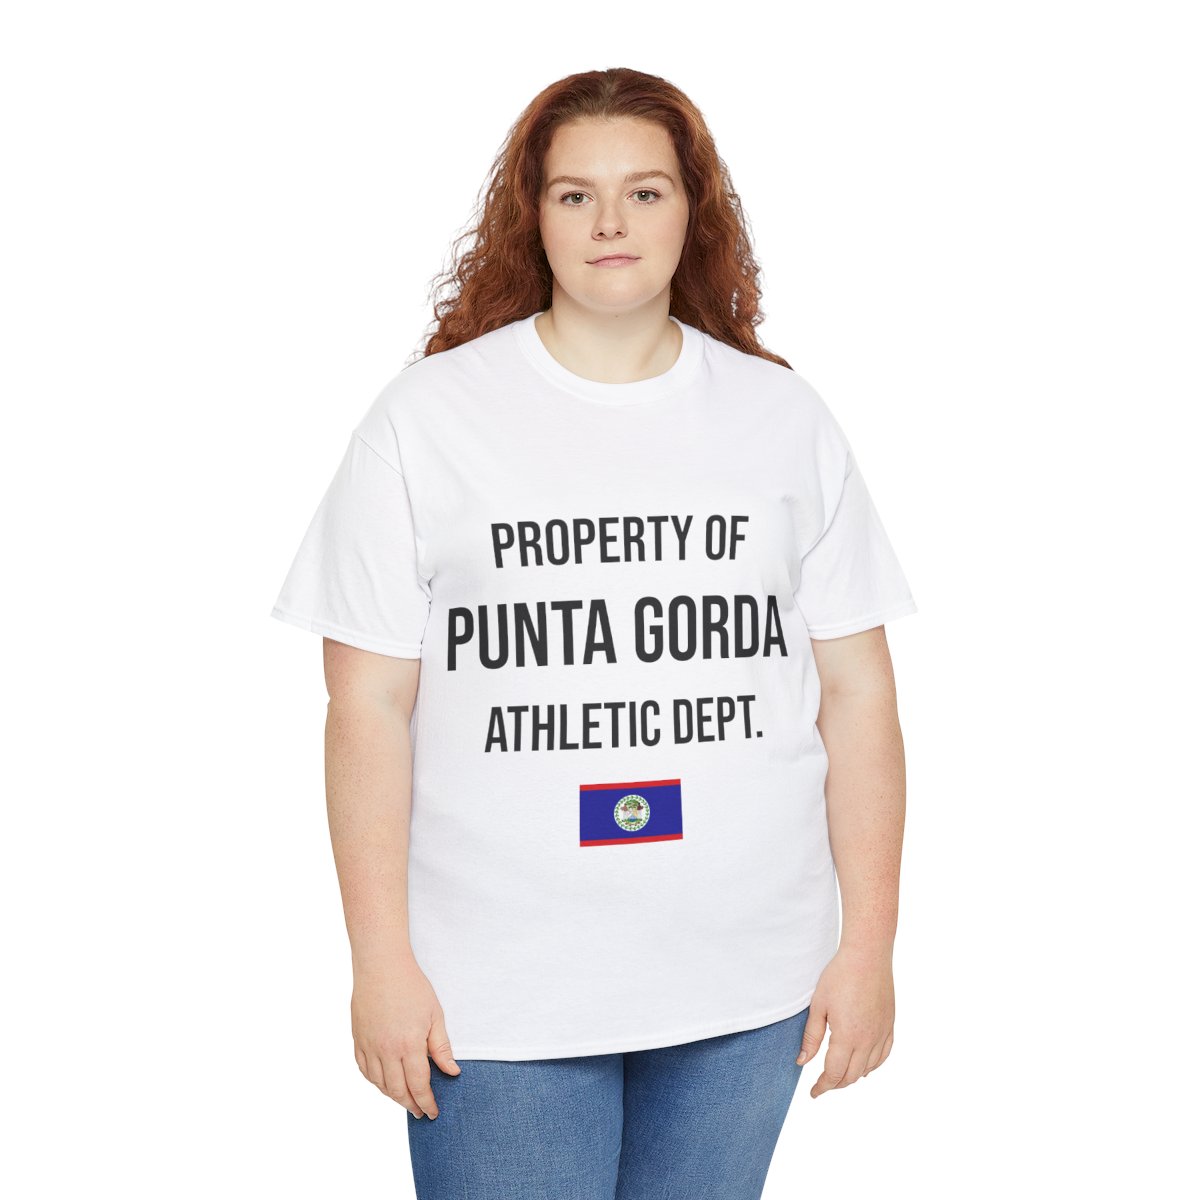 Punta Gorda Athletic Dept. Unisex Tshirt product thumbnail image